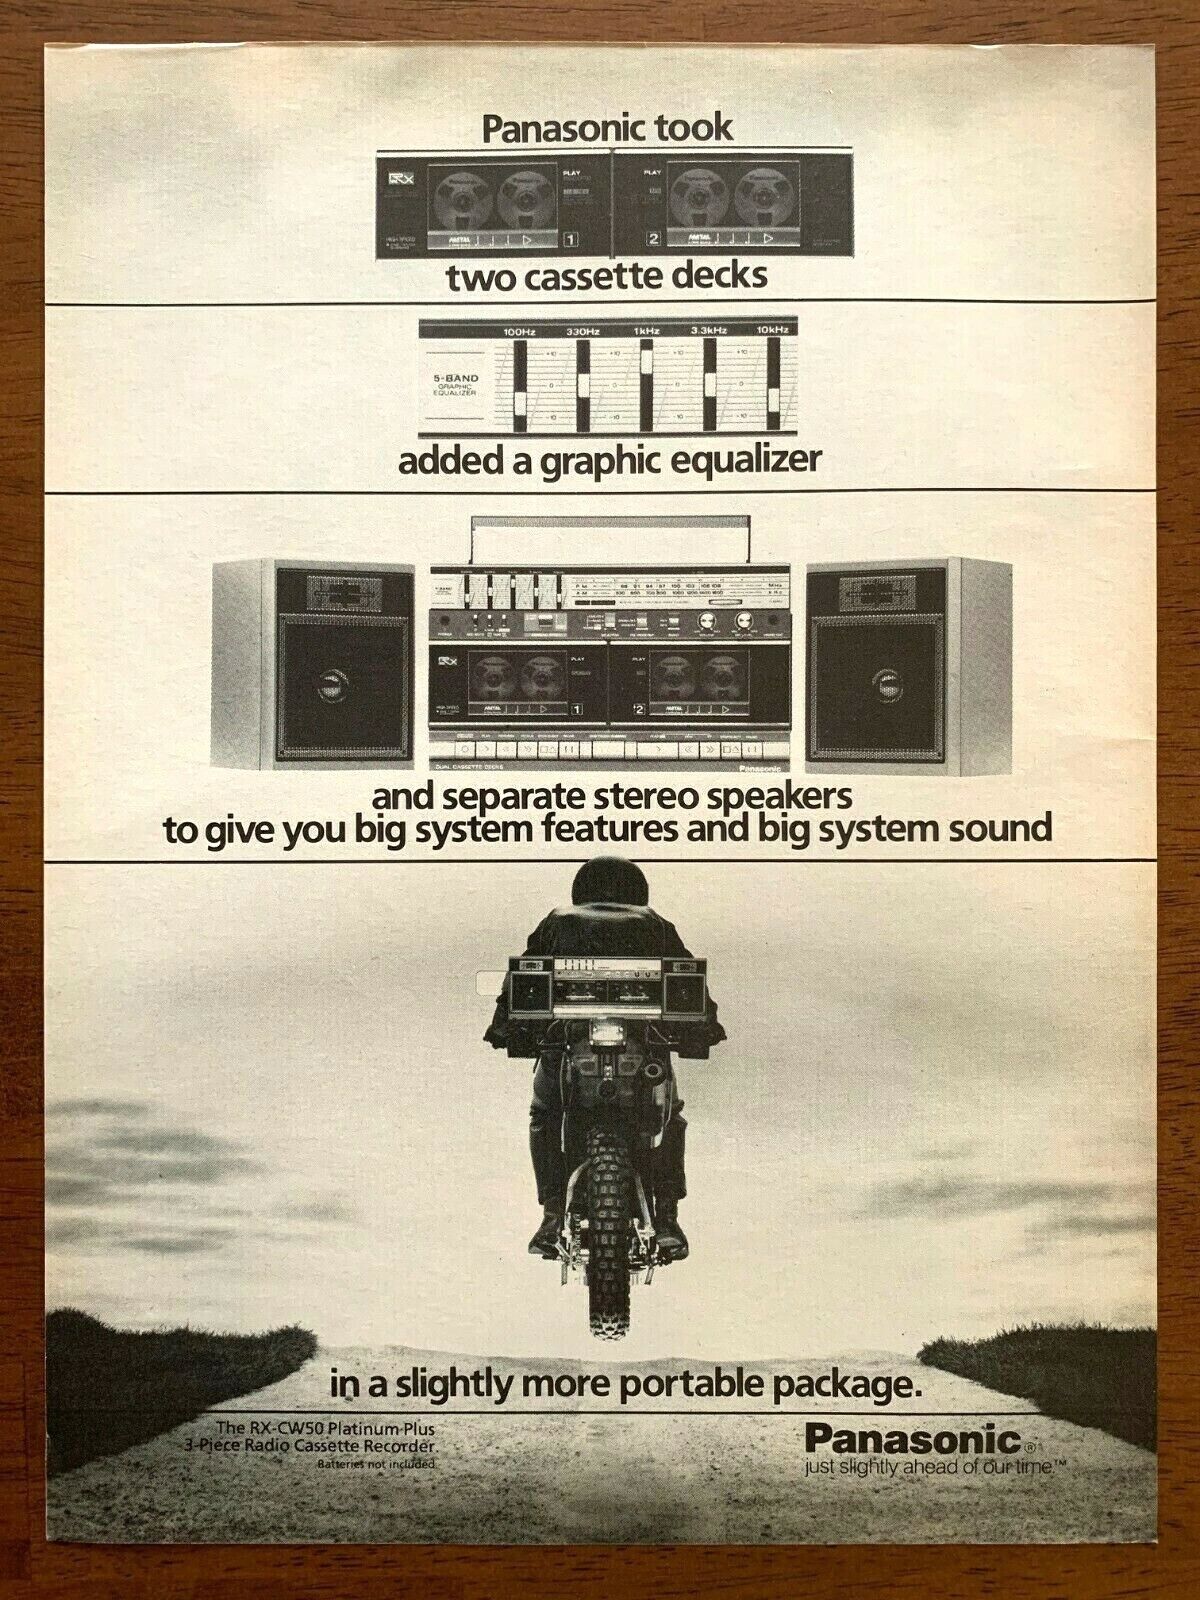 1985 Panasonic RX-CW50 Cassette Recorder Vintage Print Ad/Poster 80s Art Décor 